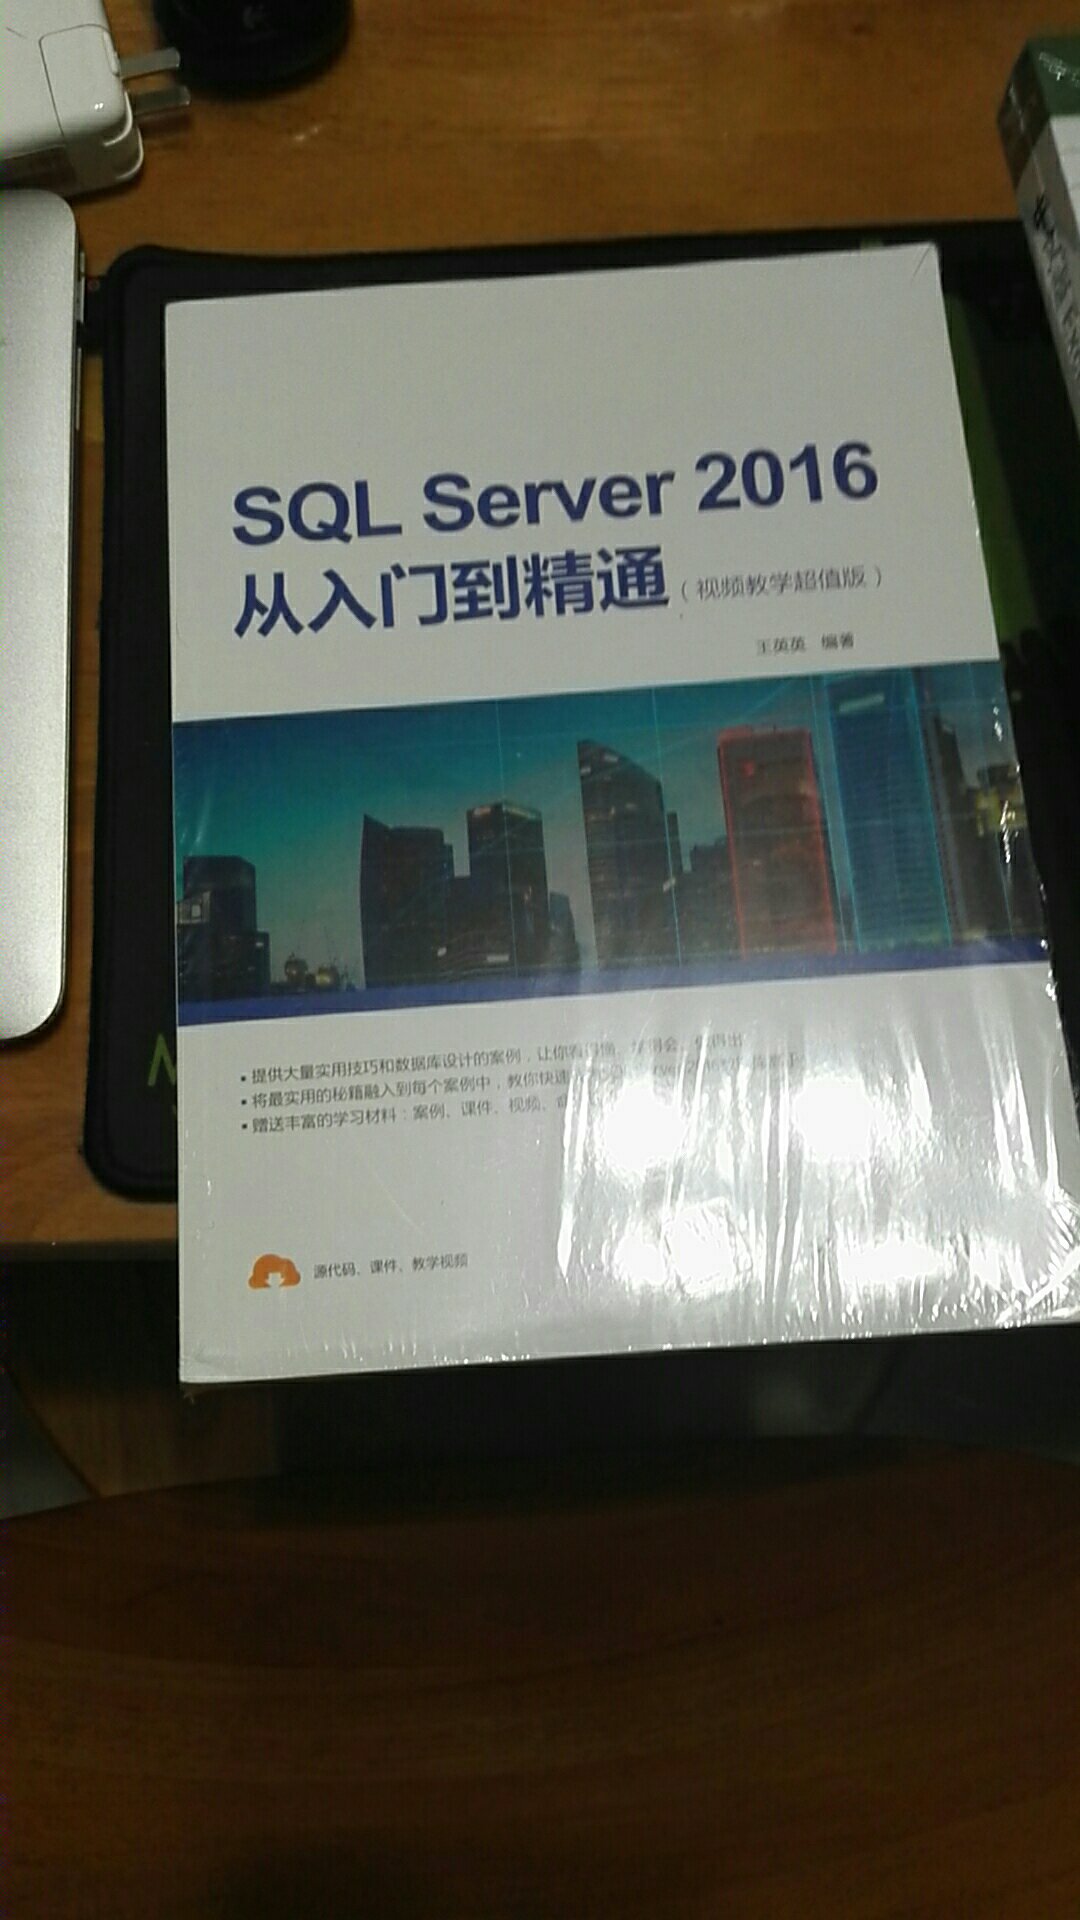 近期想了解一下sql Server 数据库，但愿这本书可以满足我的需求